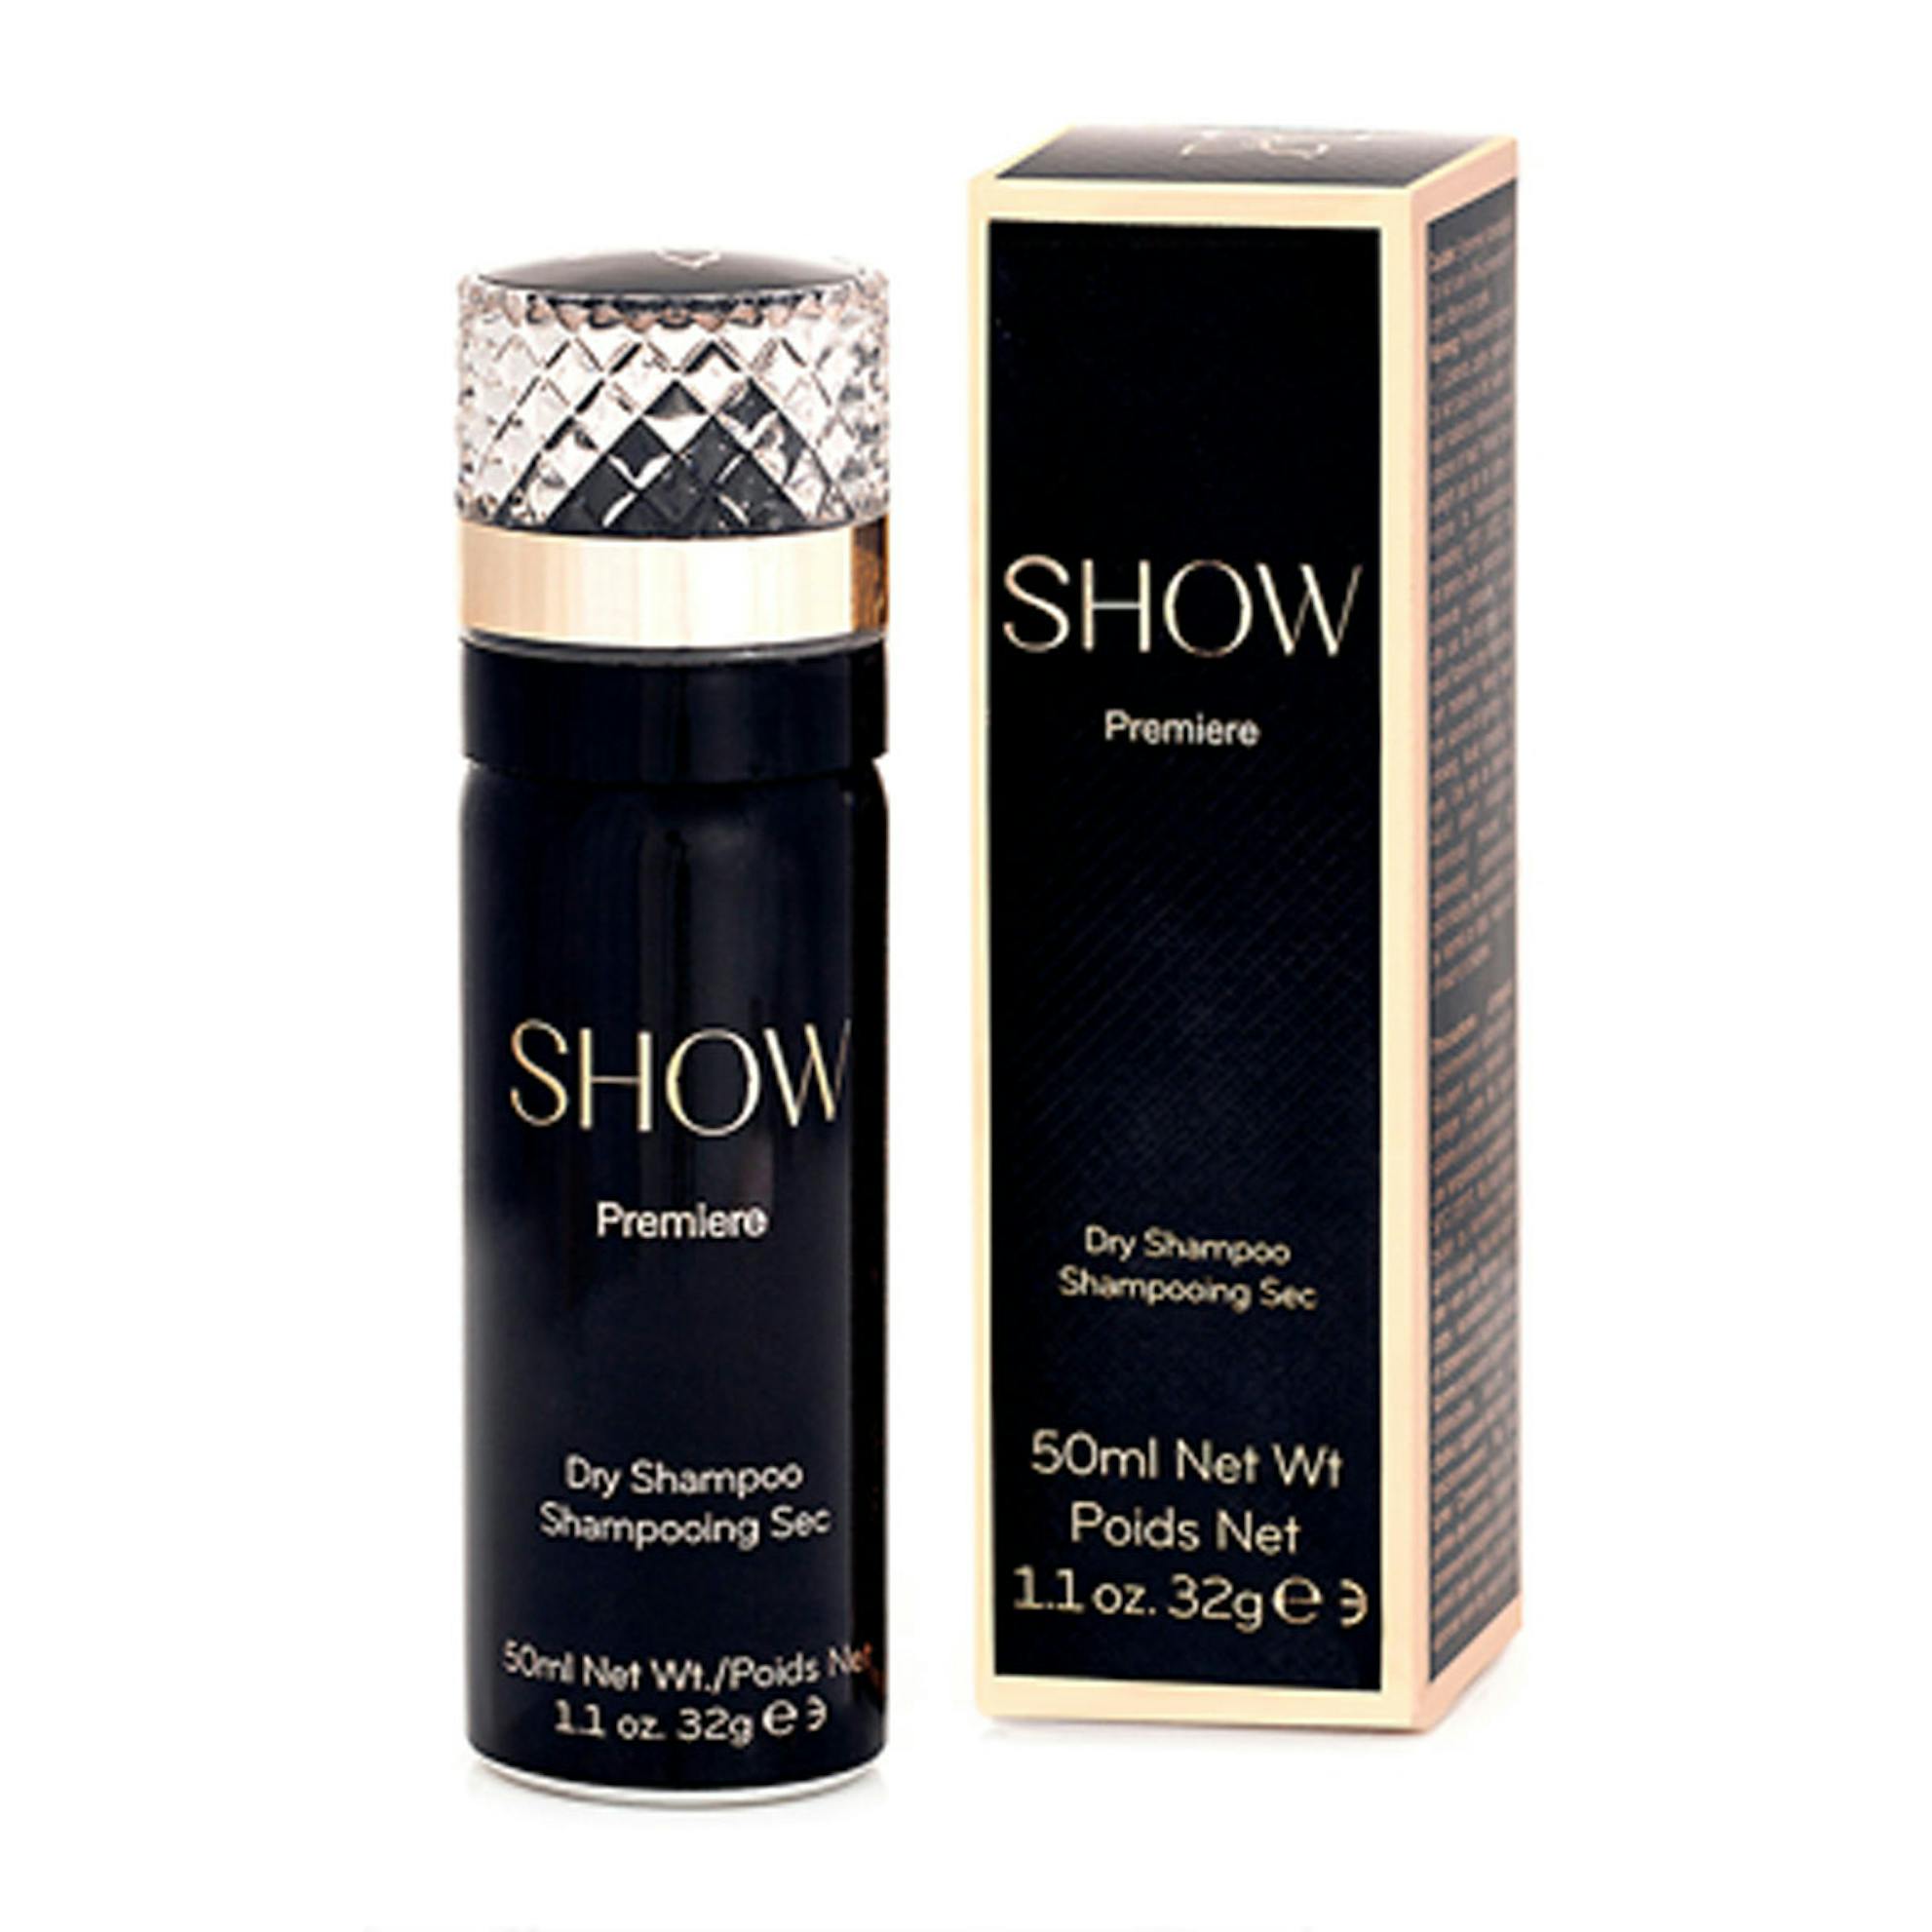 Show Beauty Mini Dry Shampoo | The Fragrance Shop